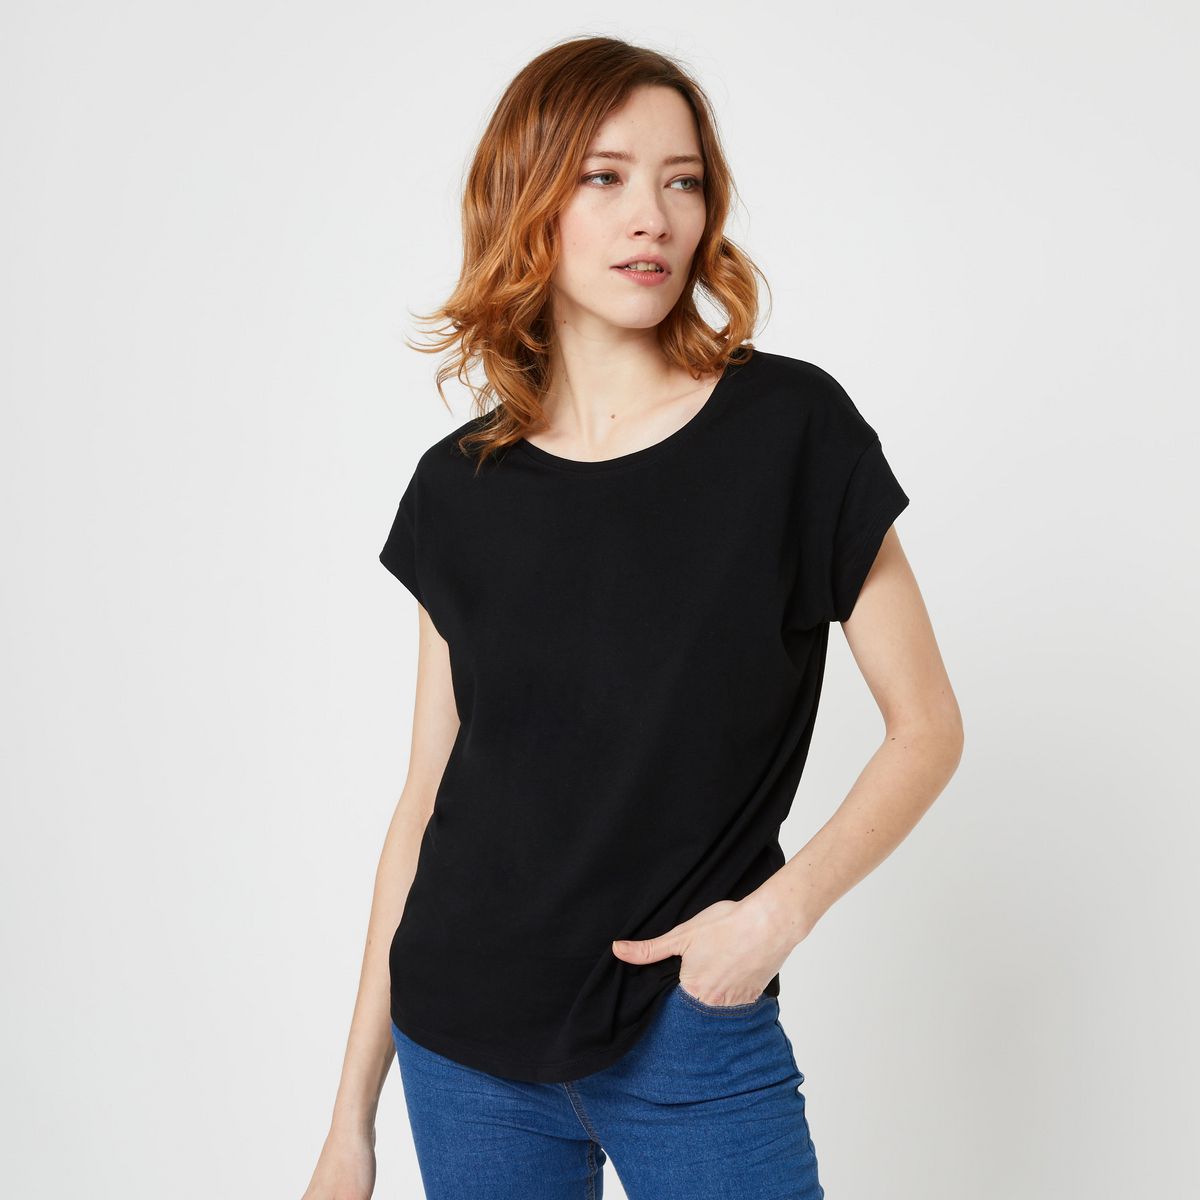 INEXTENSO T-shirt Noir femme